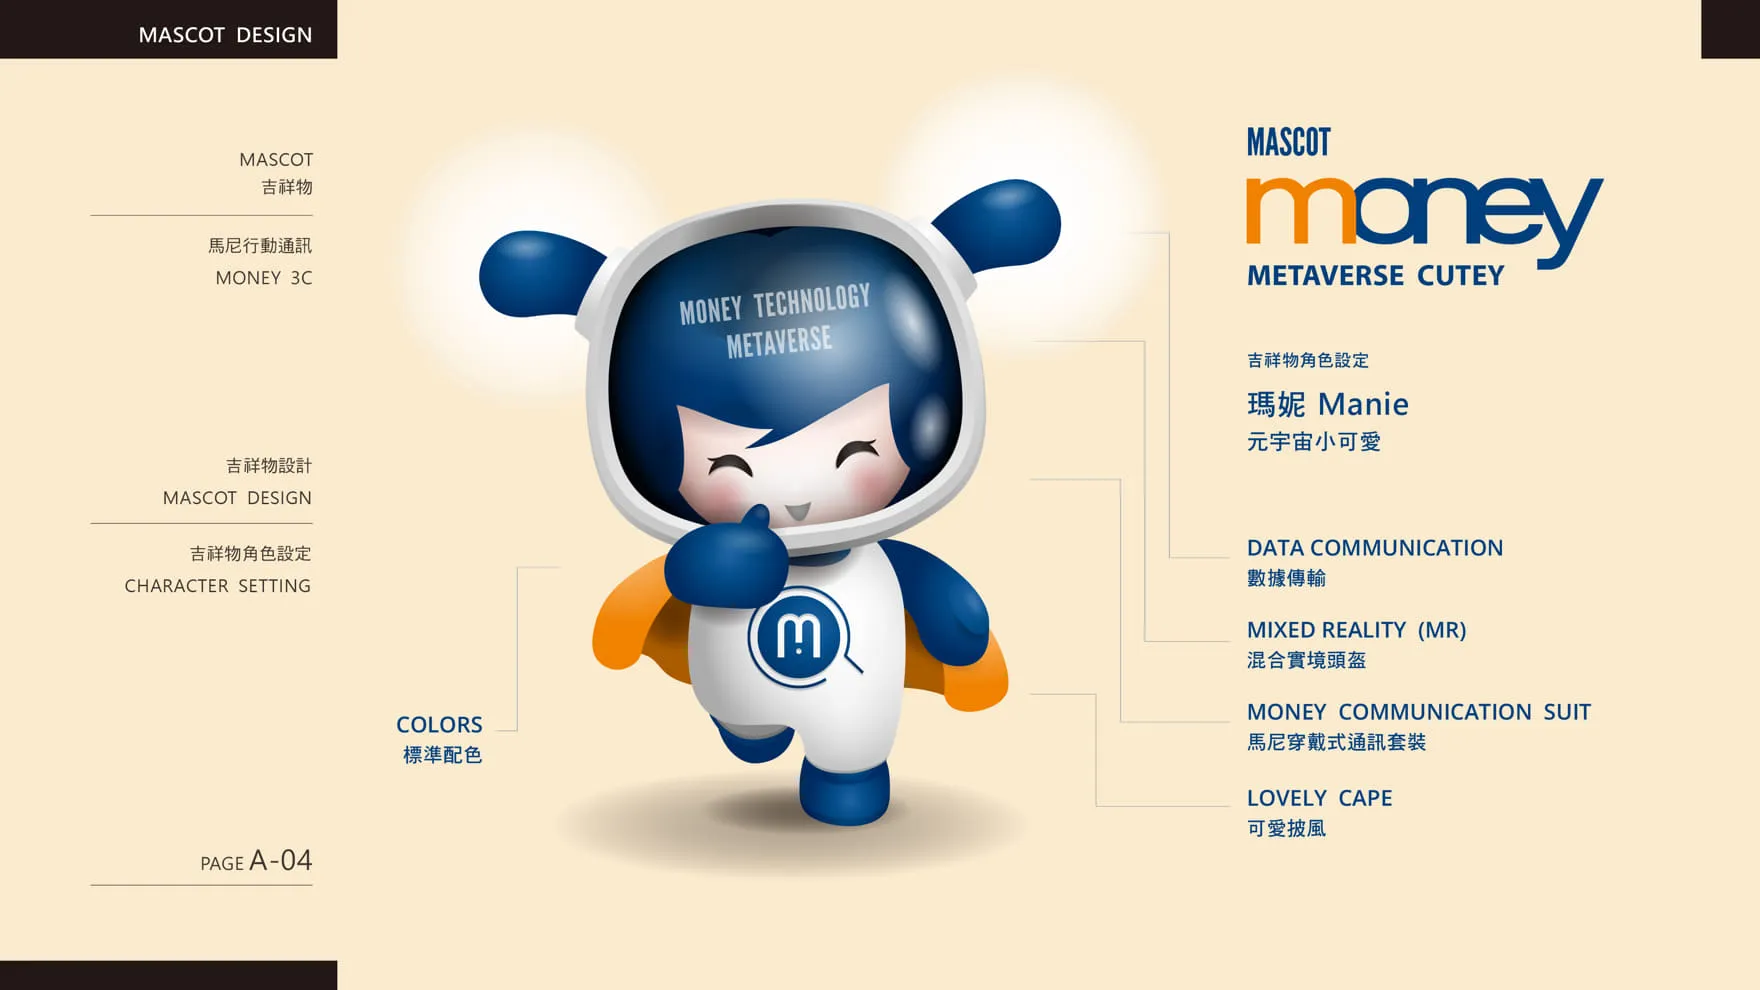 馬尼行動通訊品牌吉祥物設計角色設定 Mascot Planning